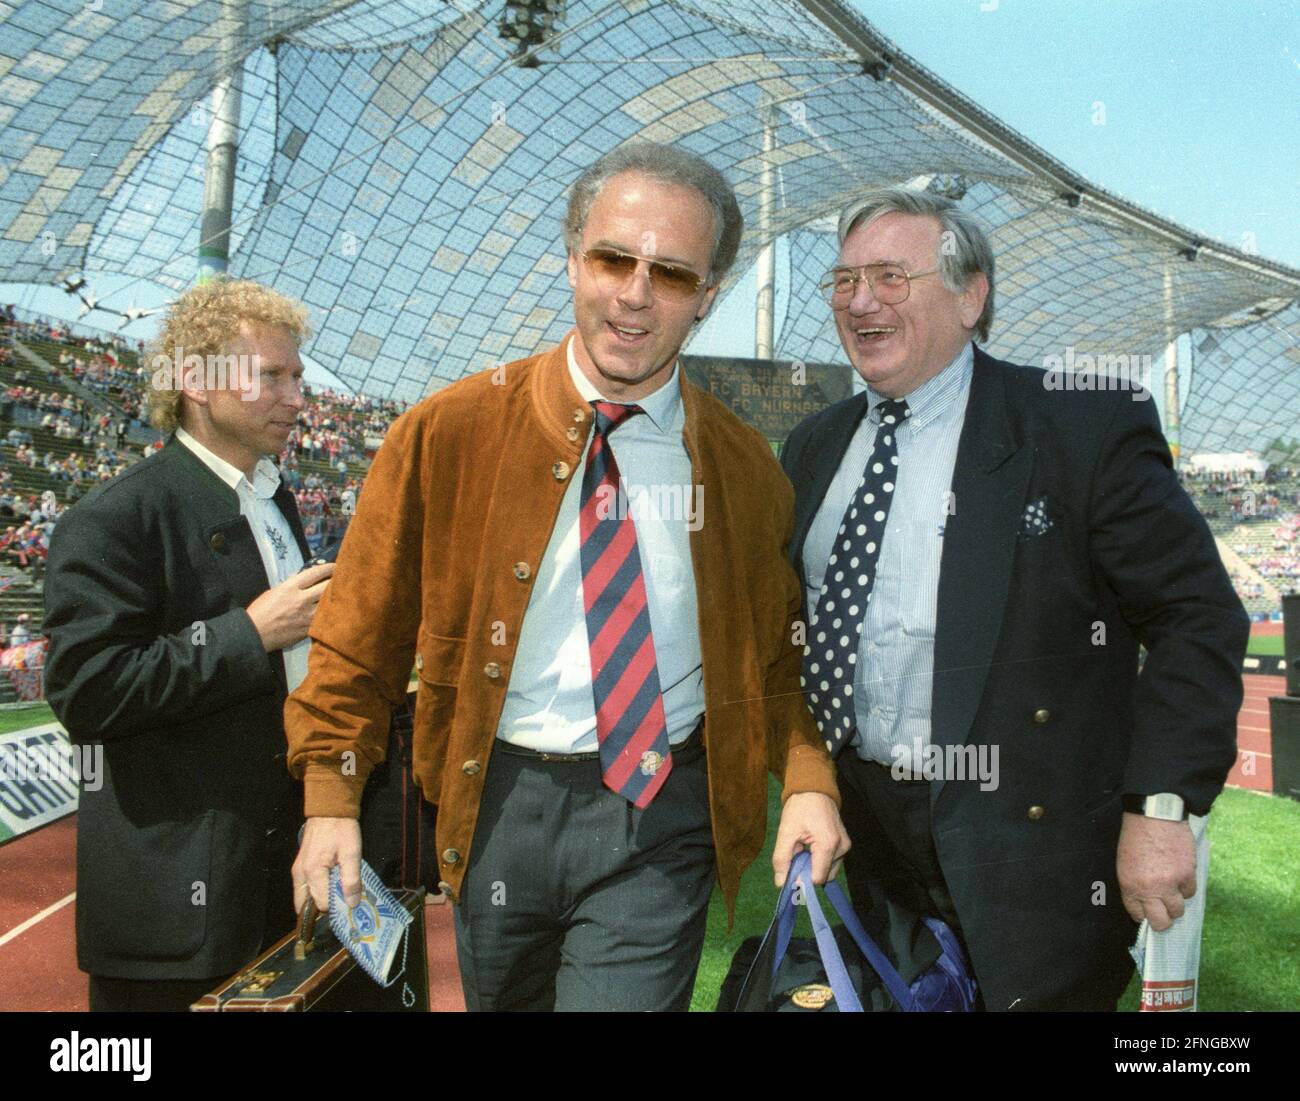 FC Bayern München - FC Schalke 04 2:0/07.05.1994. El entrenador Franz Beckenbauer (FC Bayern München) con la veterana de Schalke Charly Neumann. [traducción automática] Foto de stock